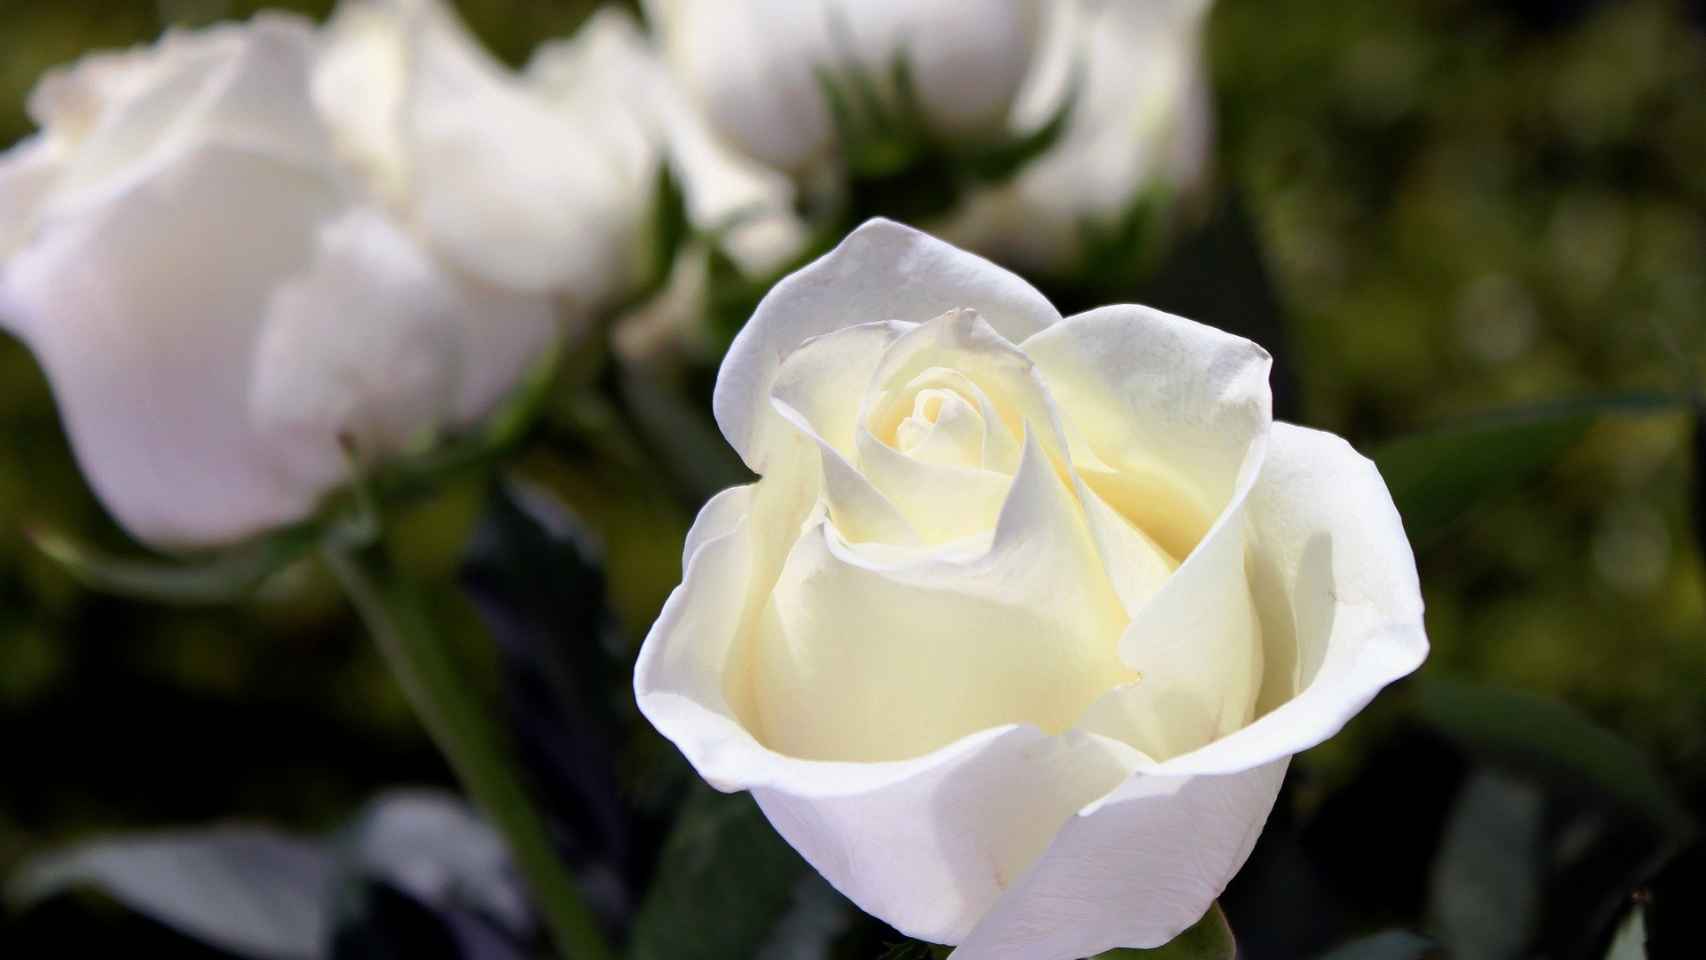 Están deprimidos interferencia Artificial El significado de las rosas blancas, el lenguaje de las flores